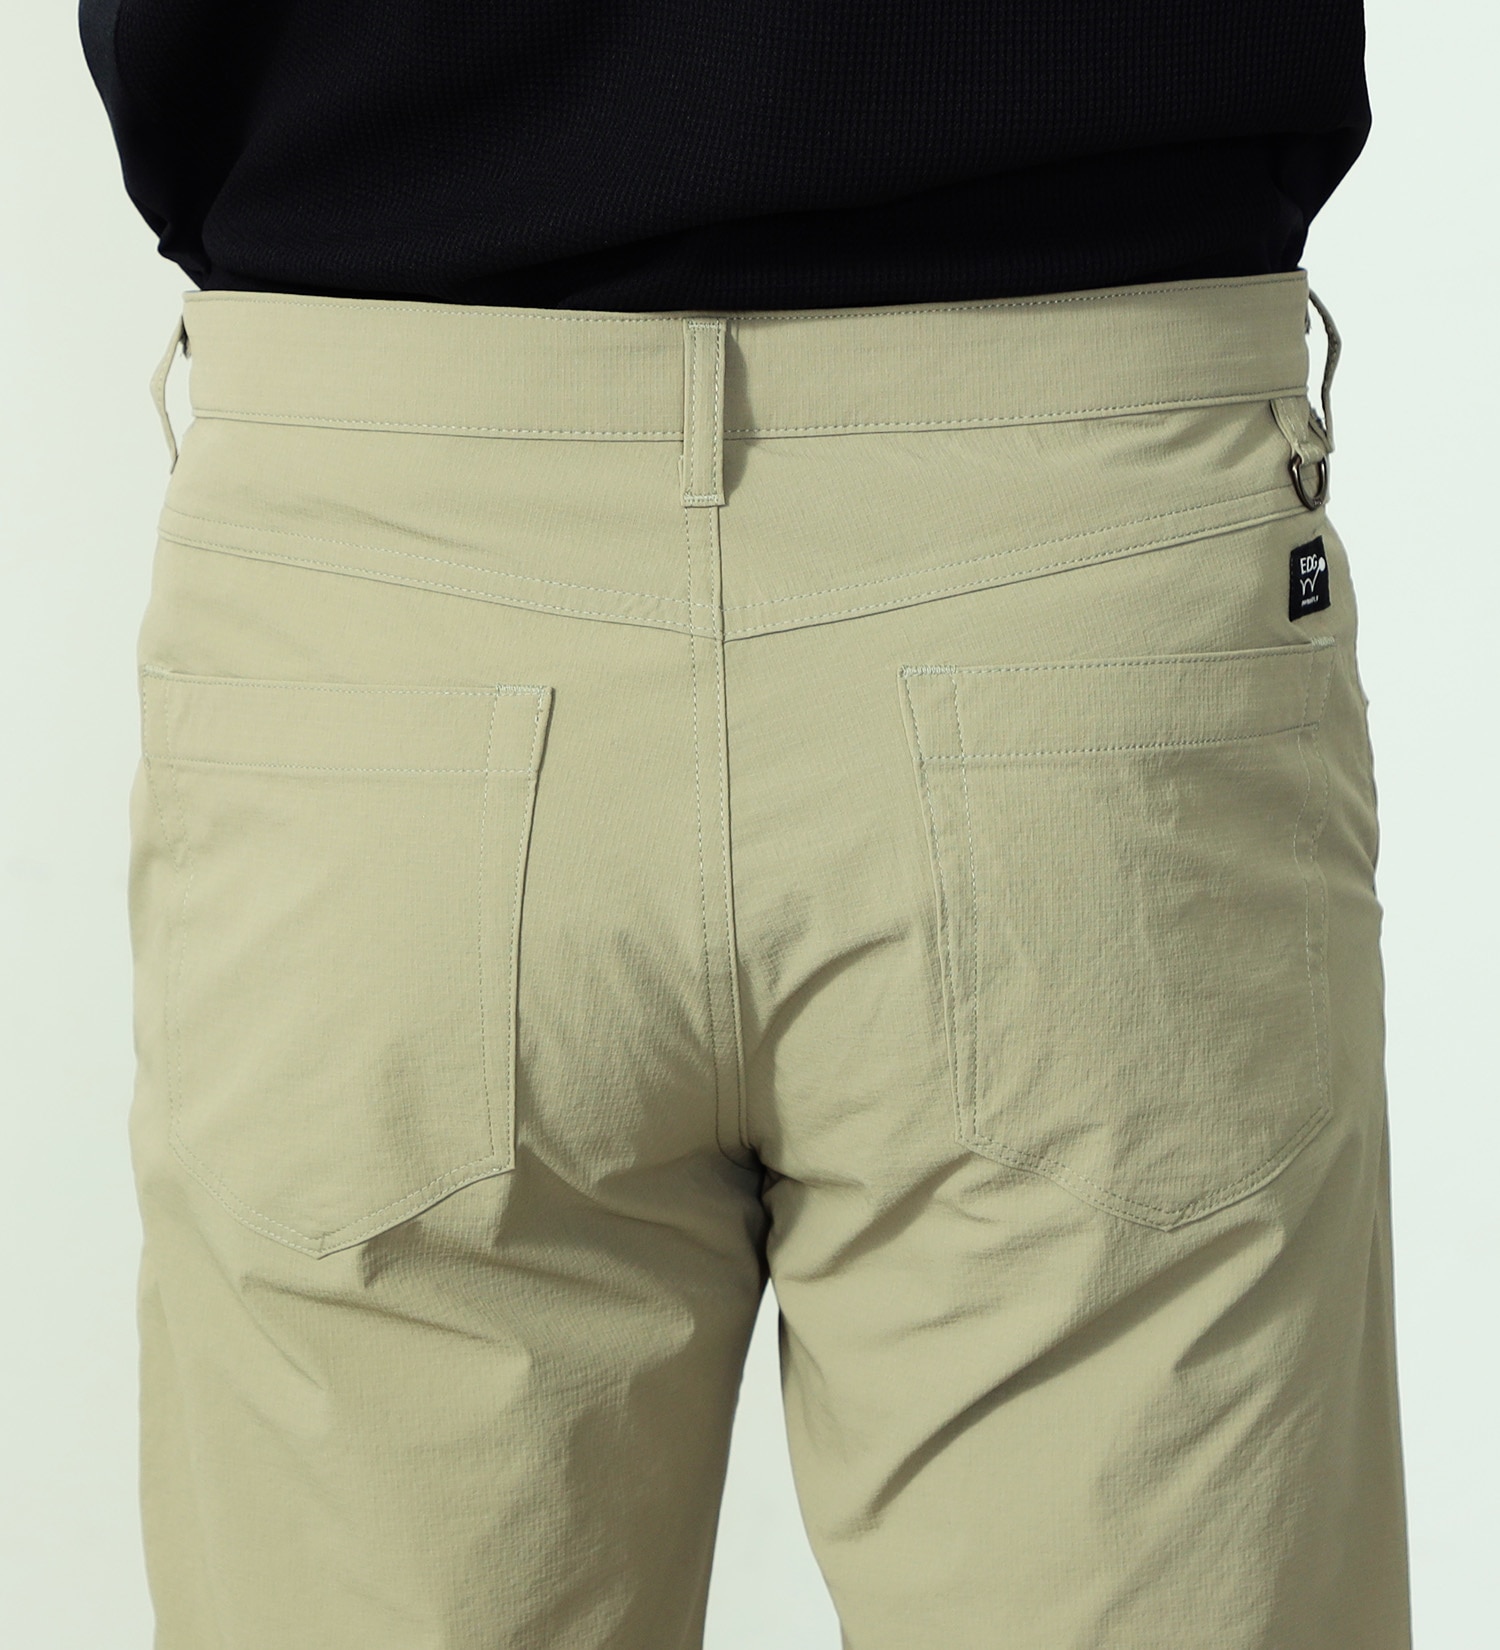 EDWIN(エドウイン)のEDWIN GOLF ショートパンツ 軽量|パンツ/ショート丈/メンズ|ベージュ